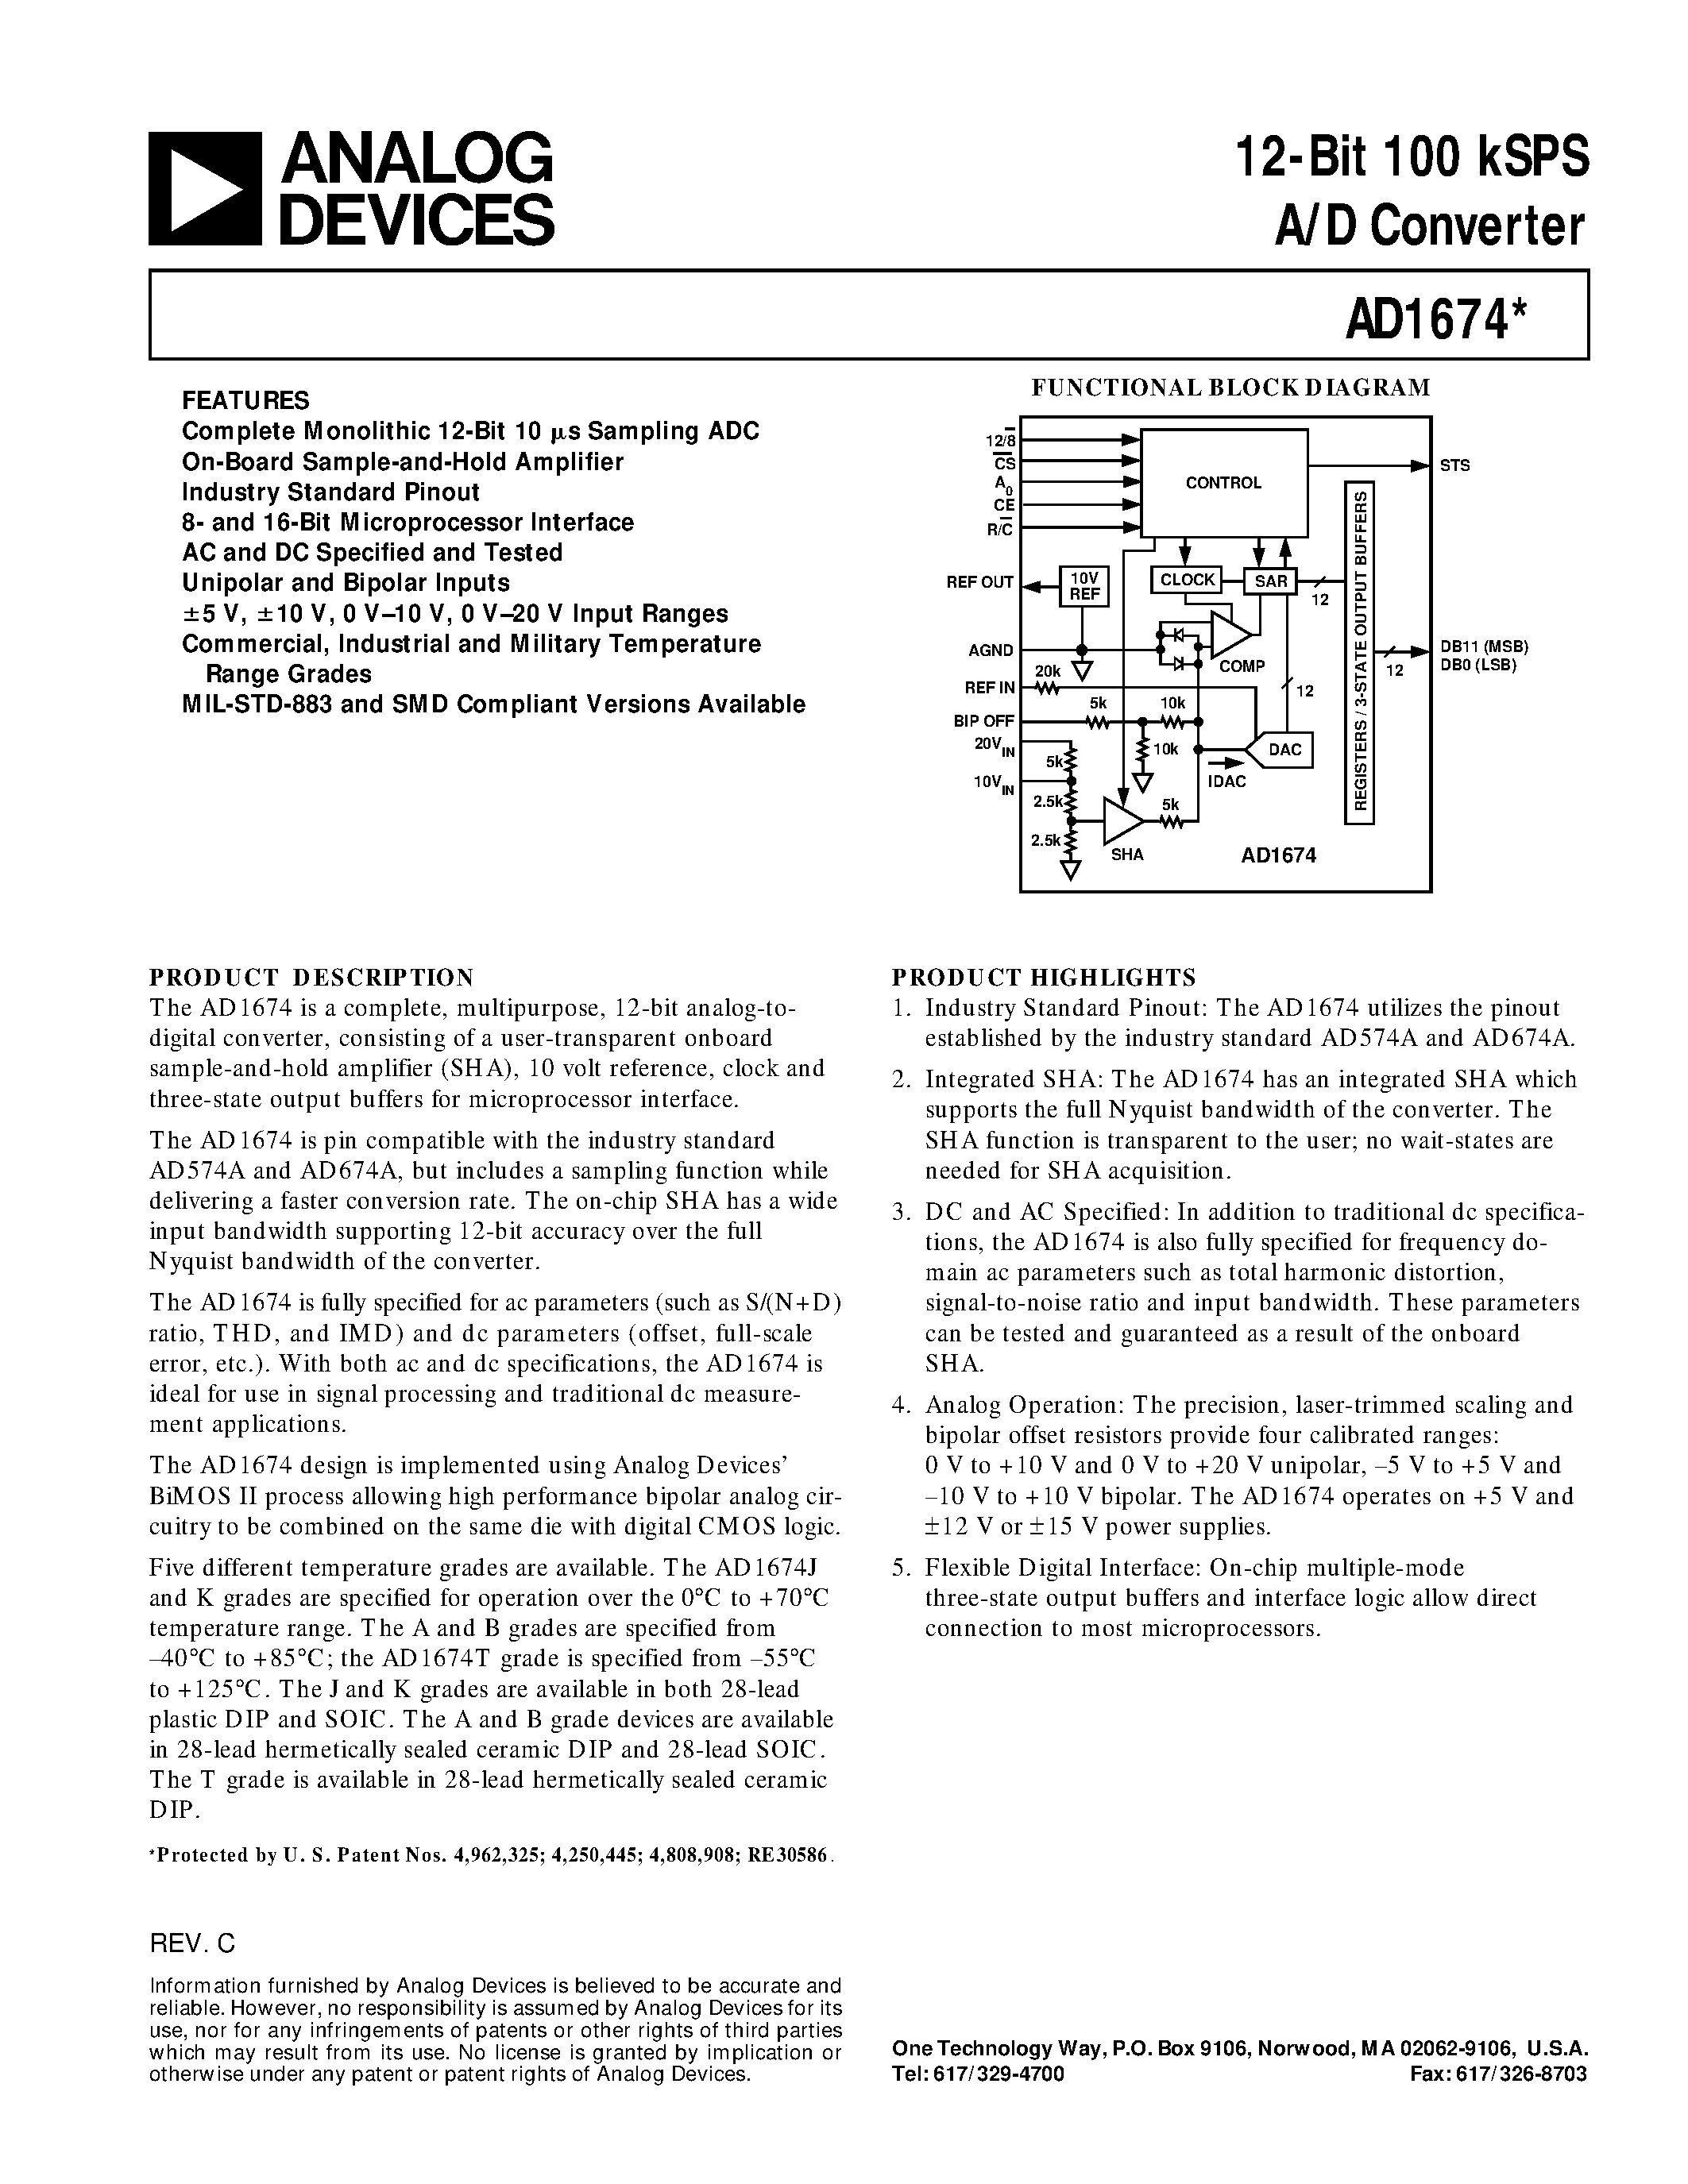 Даташит AD1674T - 12-Bit 100 kSPS A/D Converter страница 1